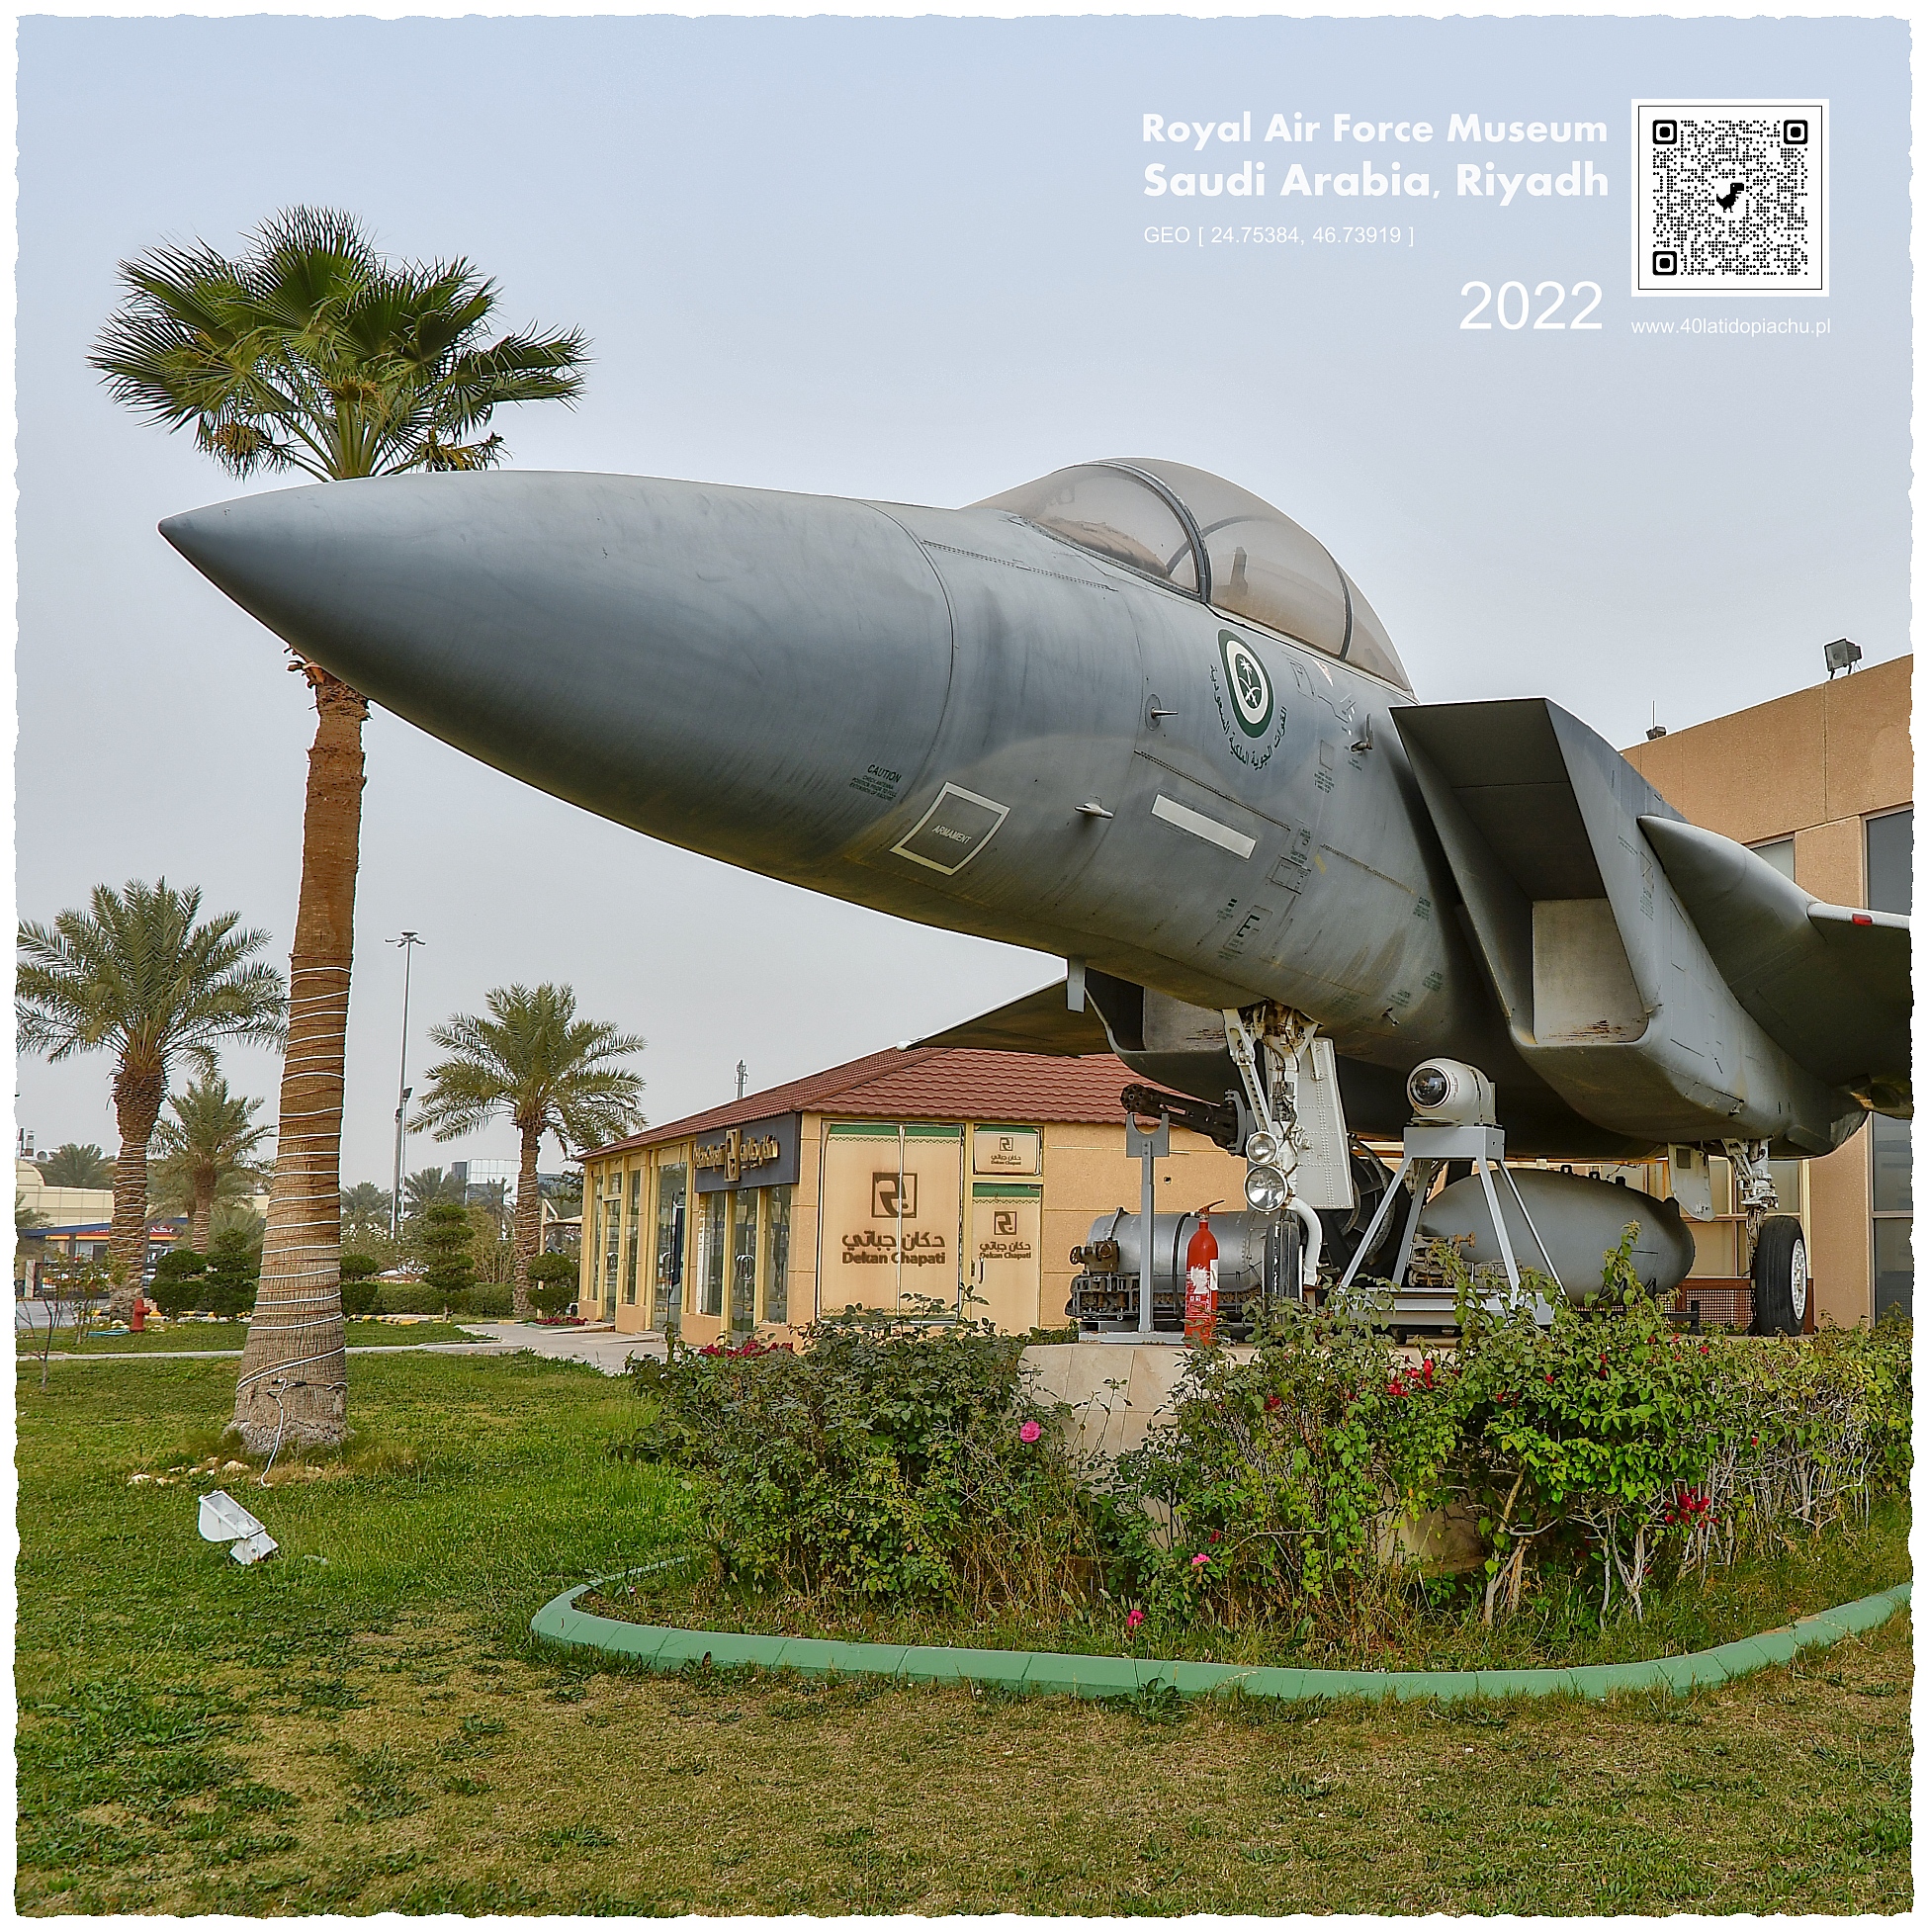 Saqer Al-Jazirah Royal Air Force Museum